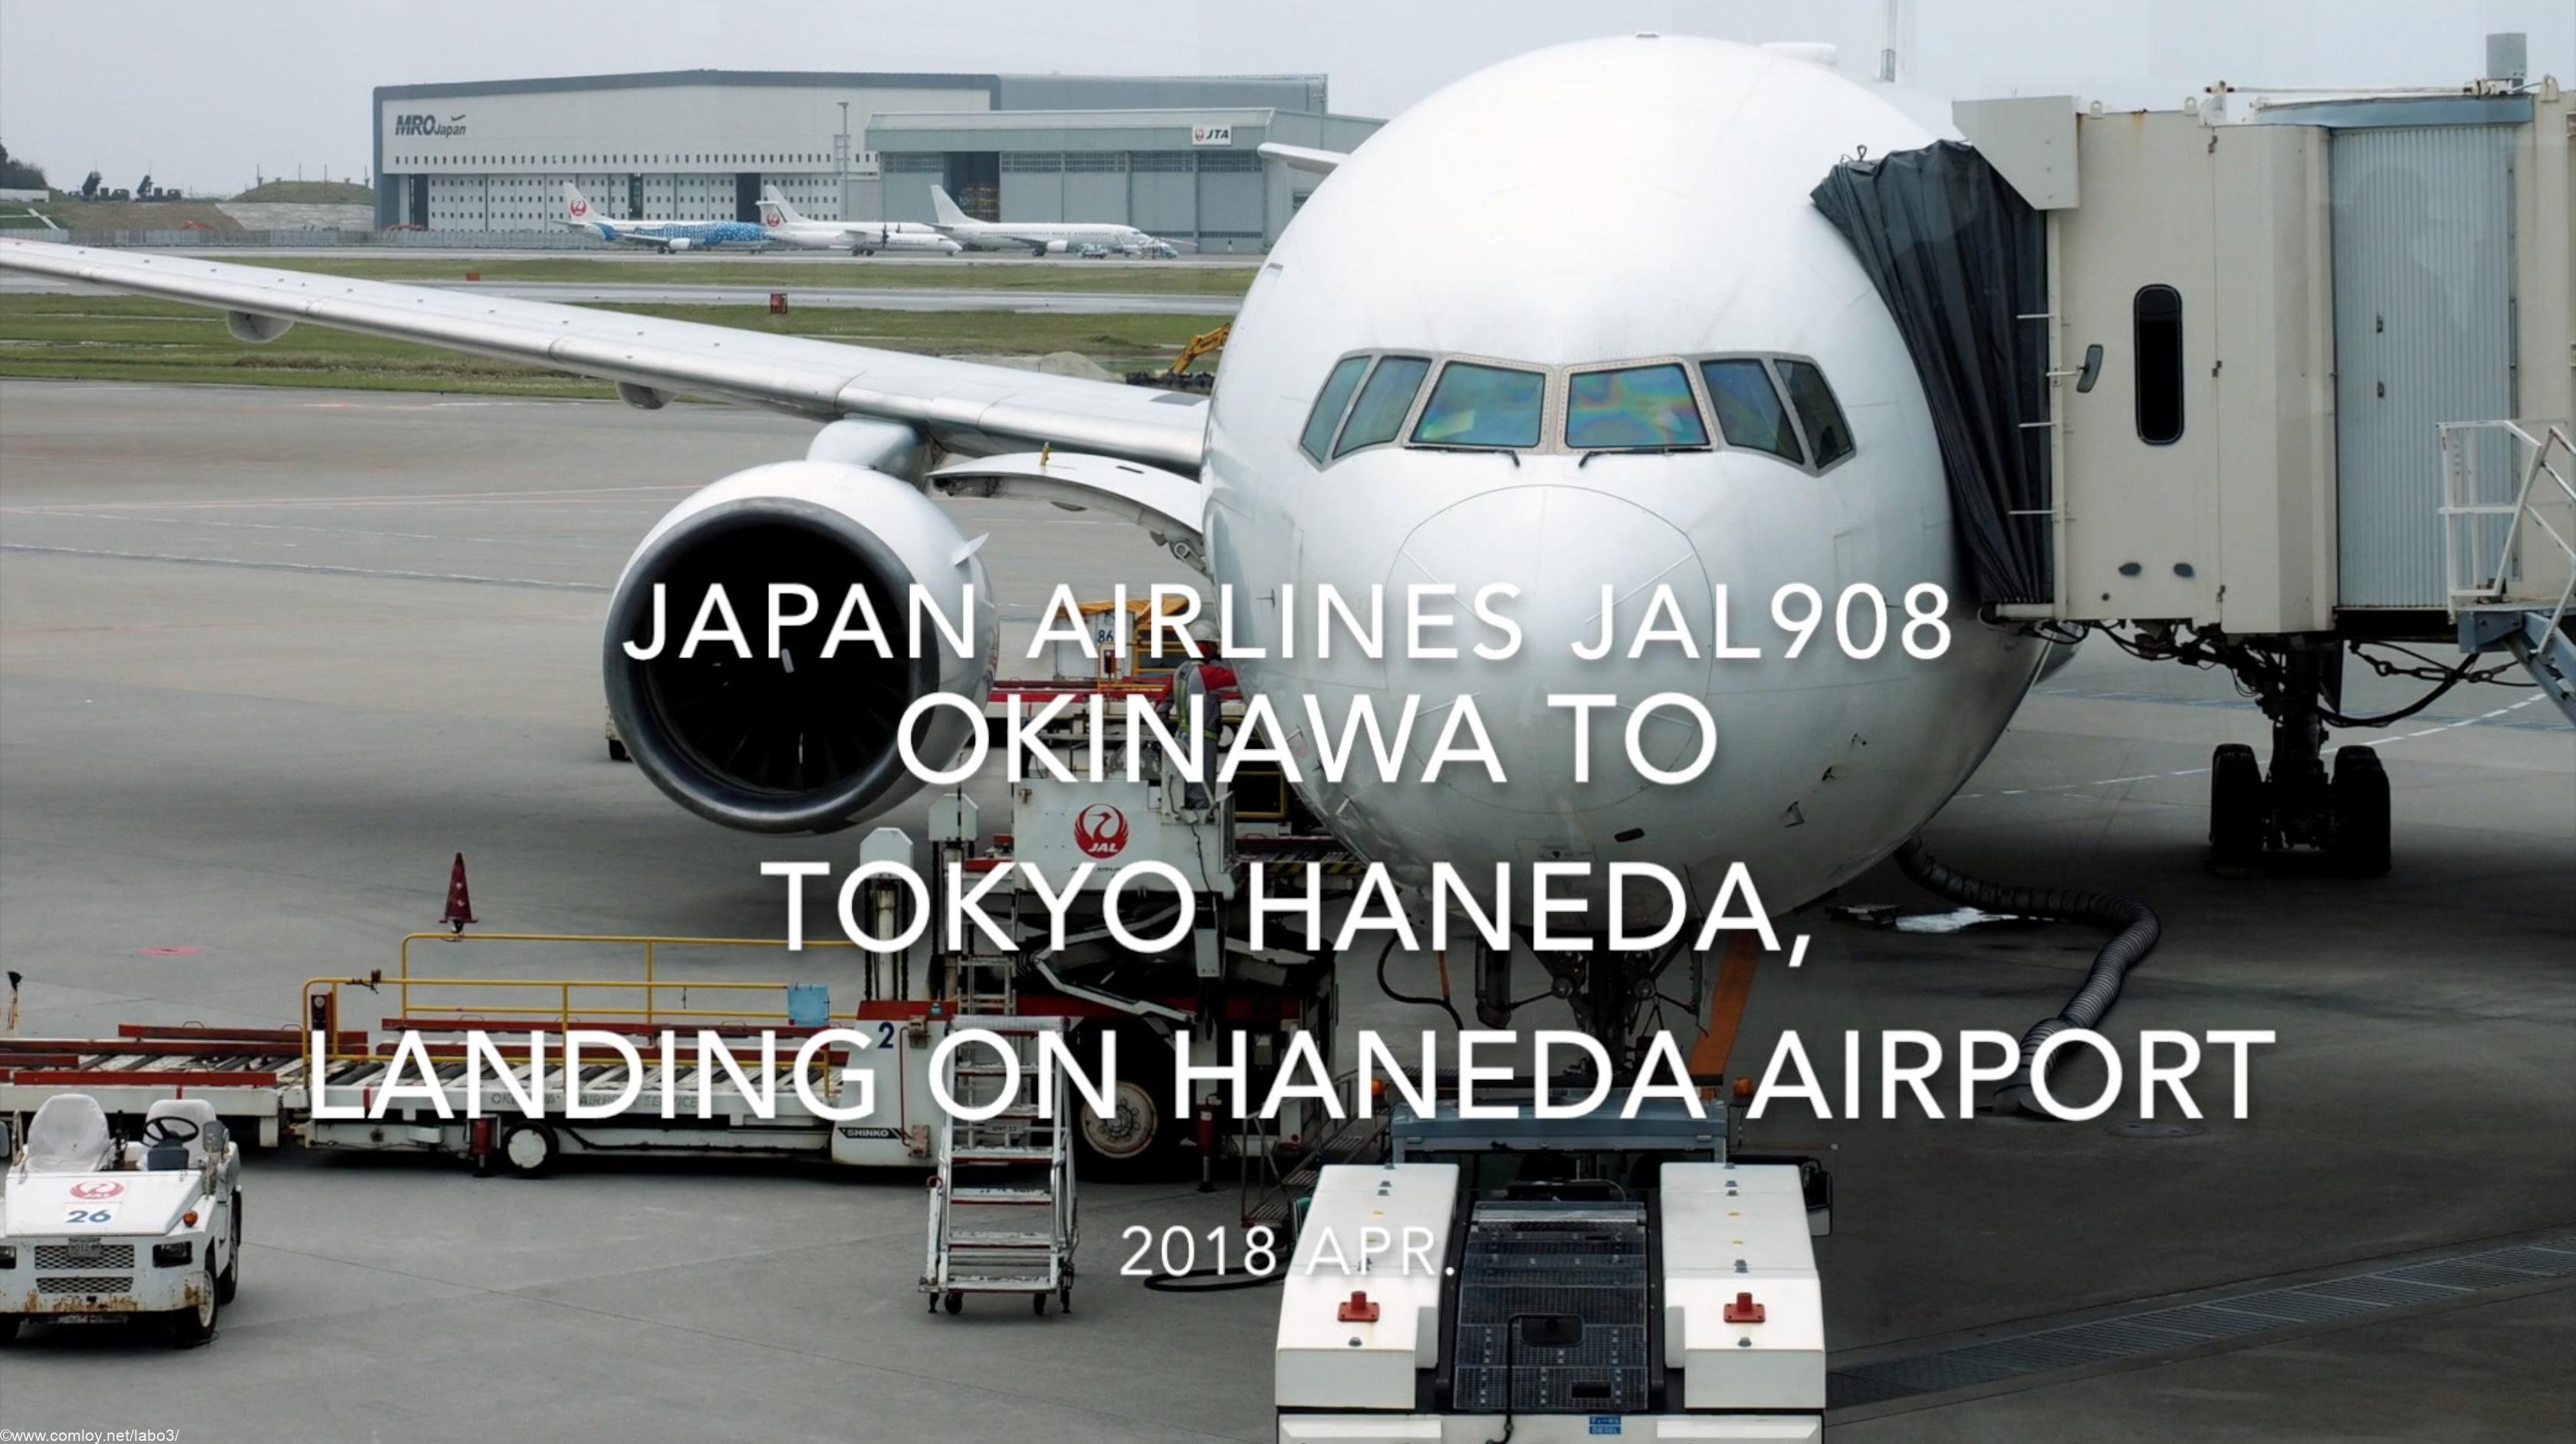 【機内から離着陸映像】2018 Apr JAL JAL908 OKINAWA to TOKYO HANEDA, Landing on Haneda airport